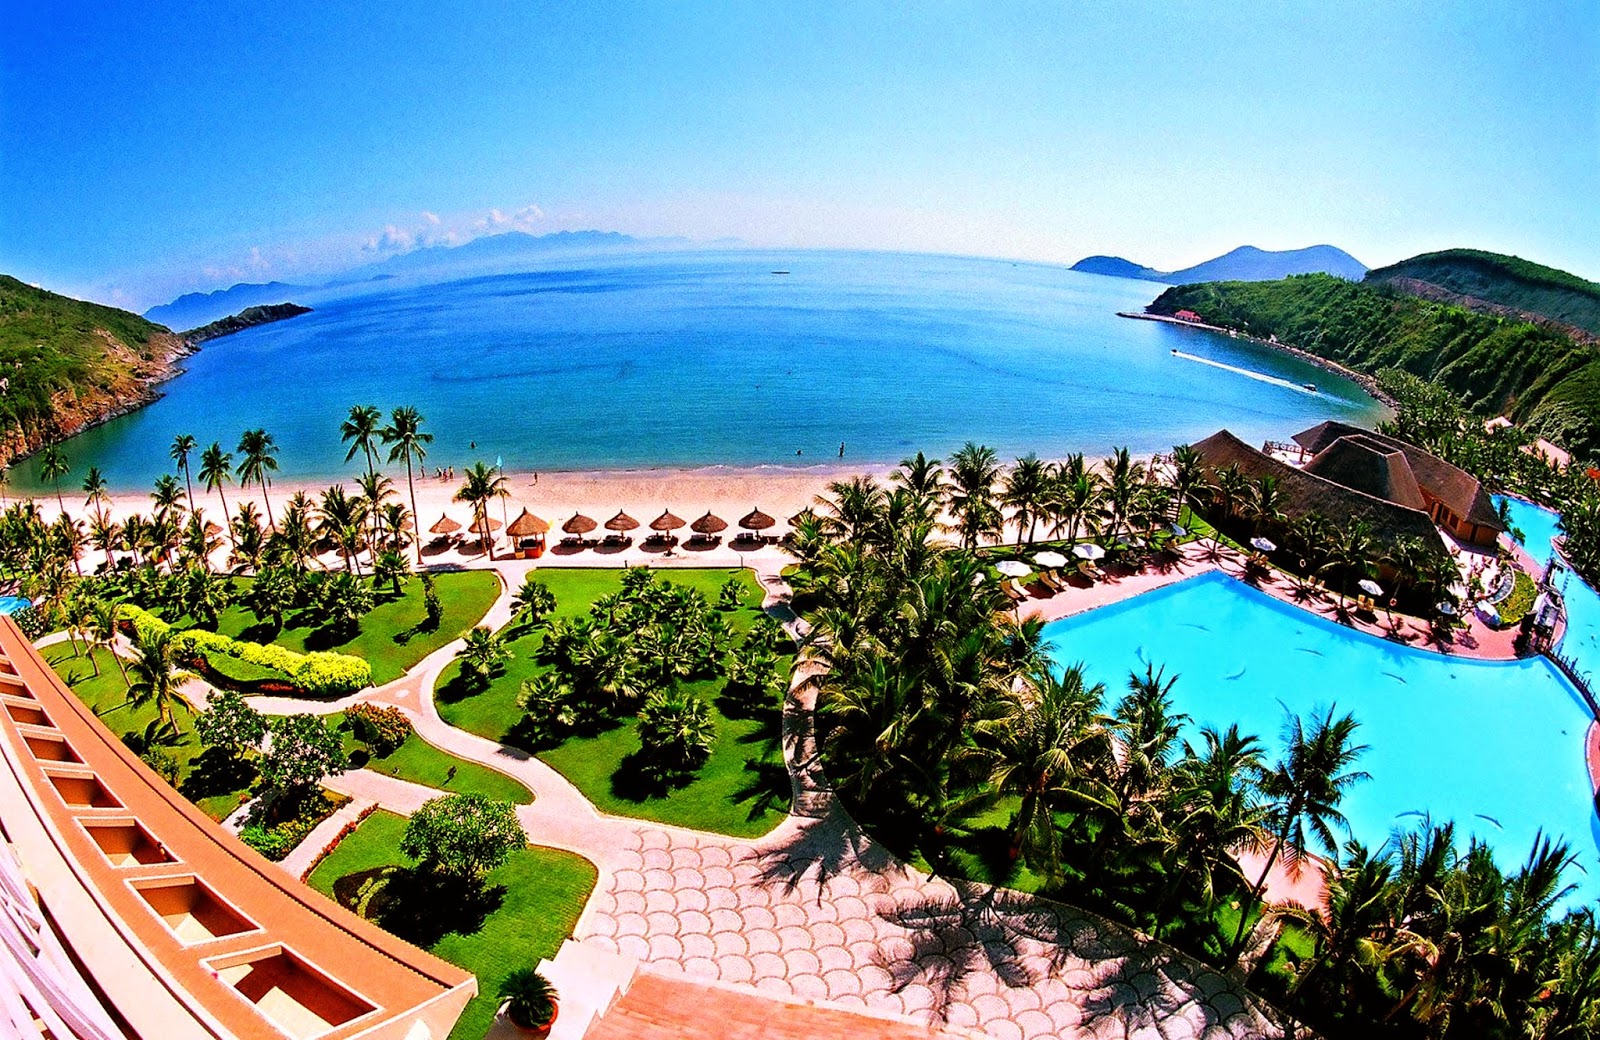  Vietnam  Tours Nha  Trang  s Vinpearl Land Luxury Resort 